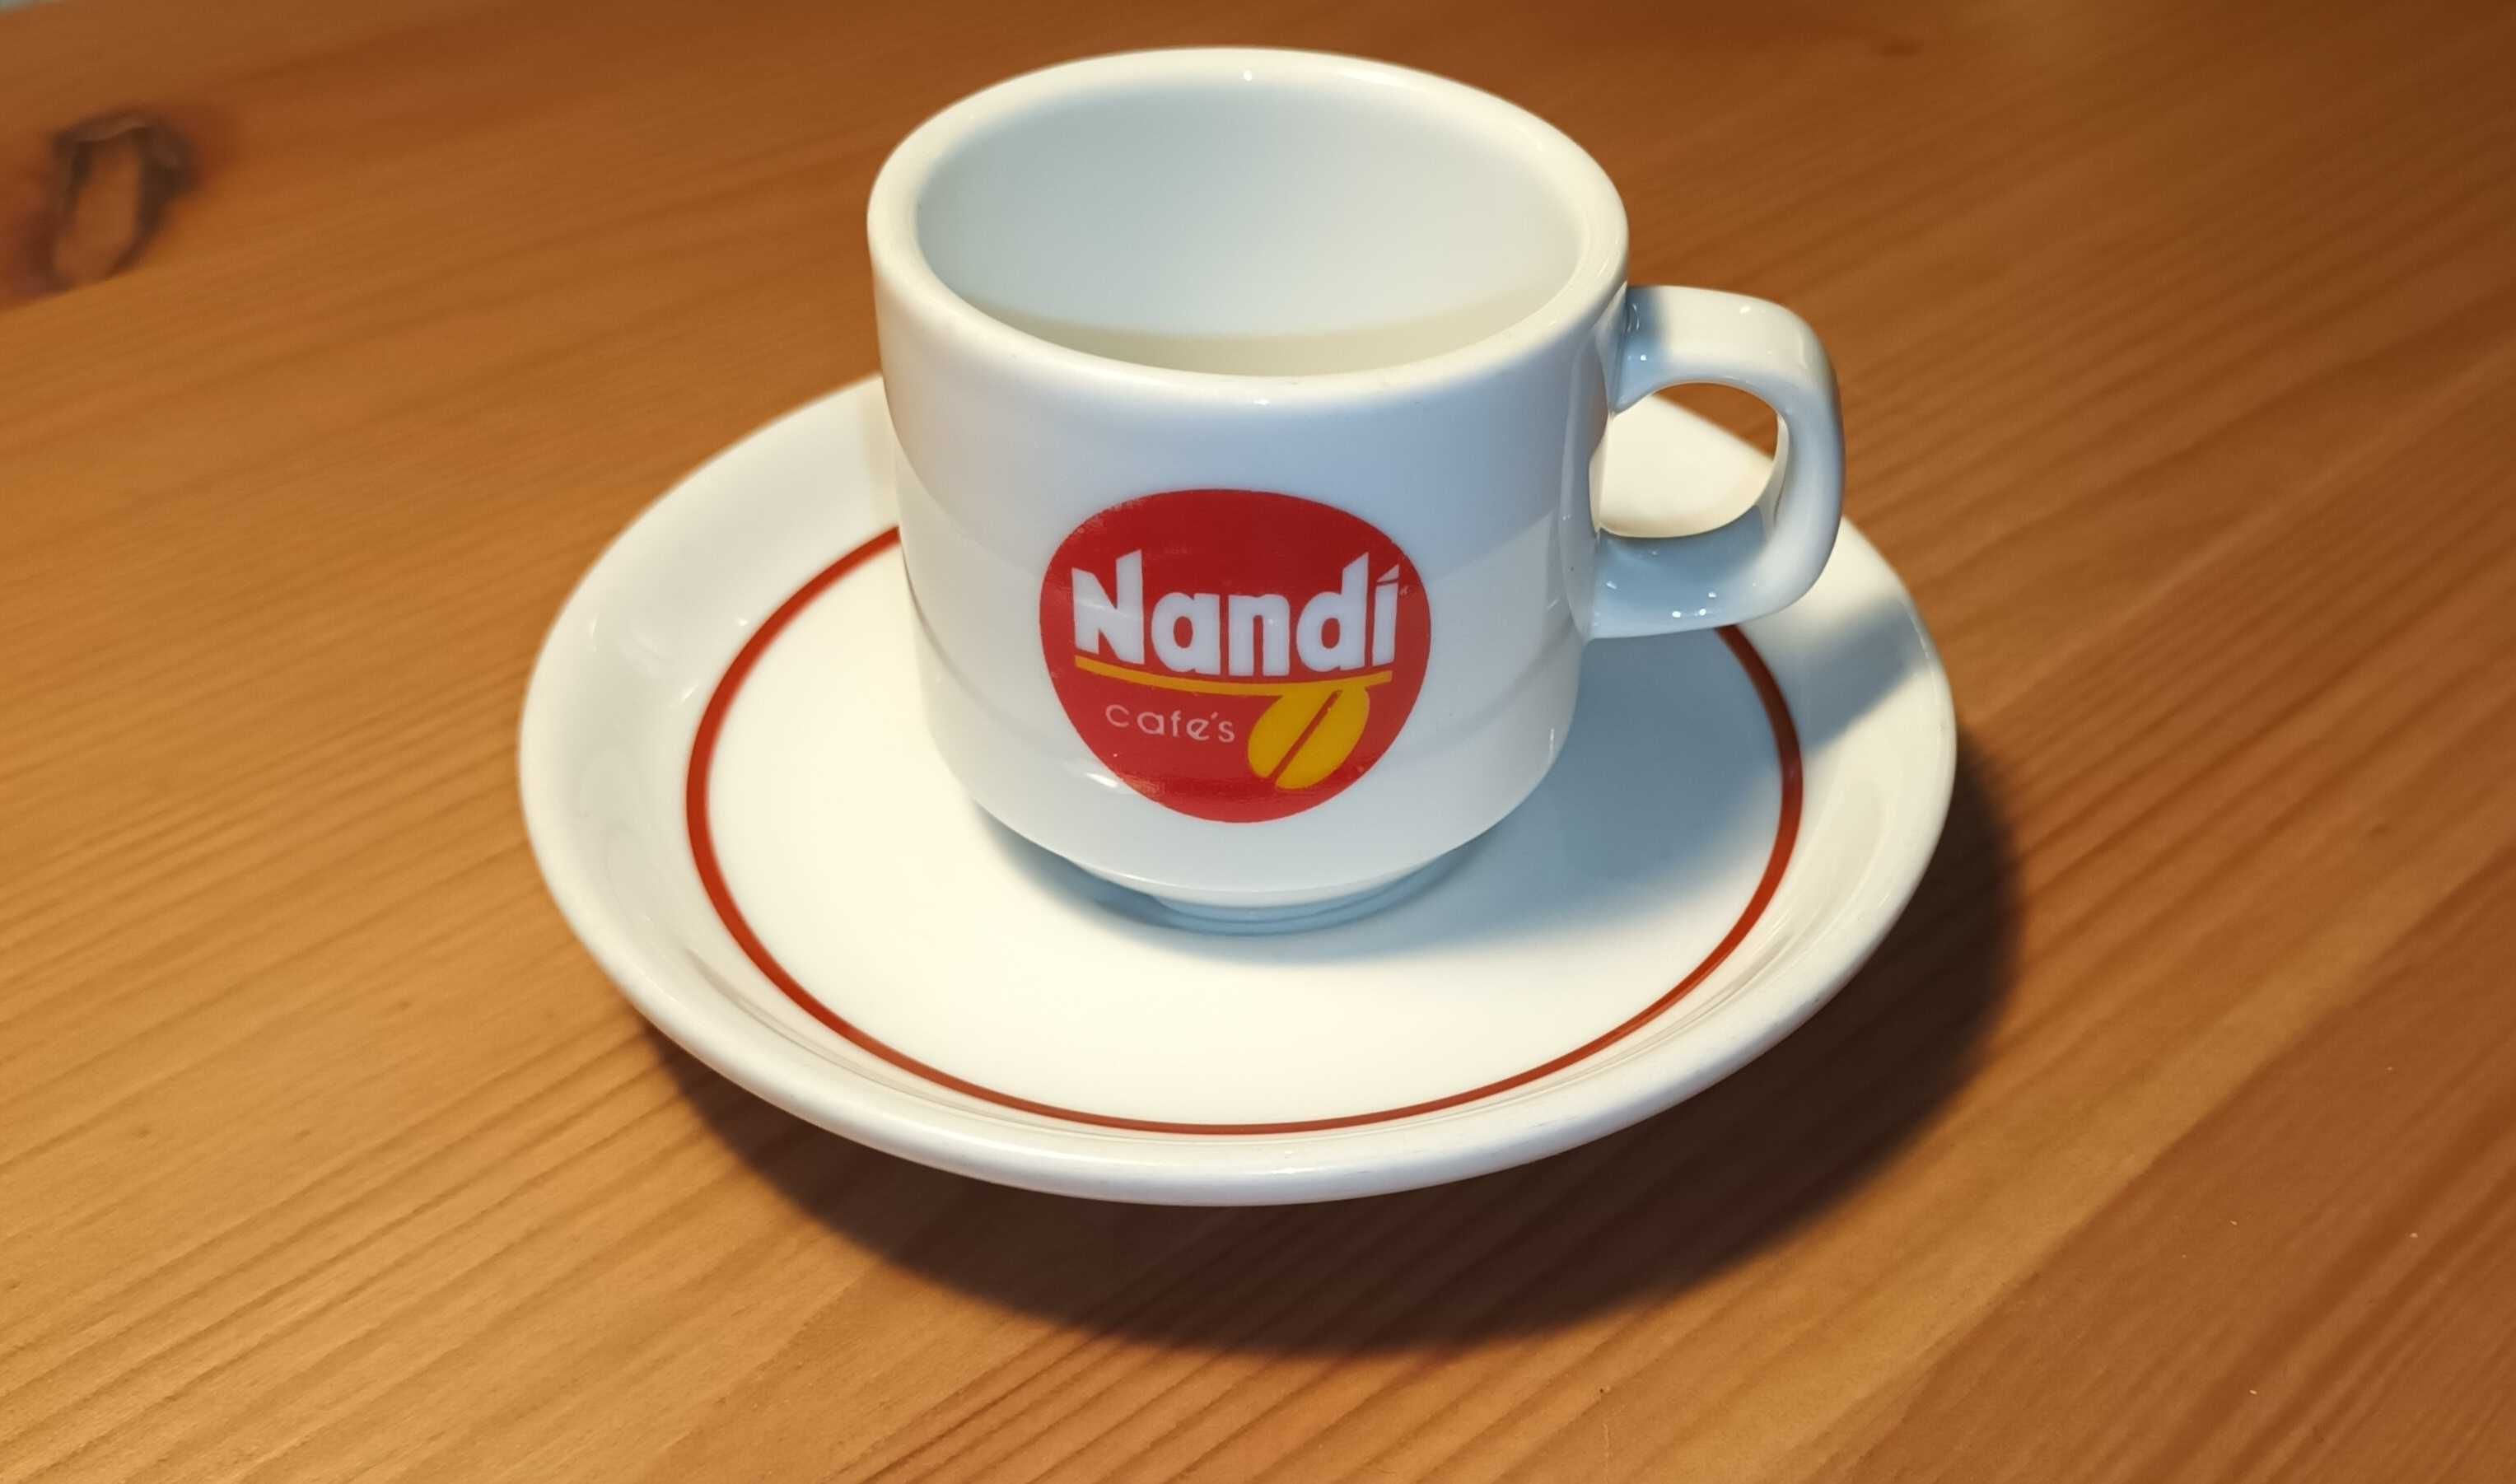 Chávena de café antiga do café "Nandi" com pires